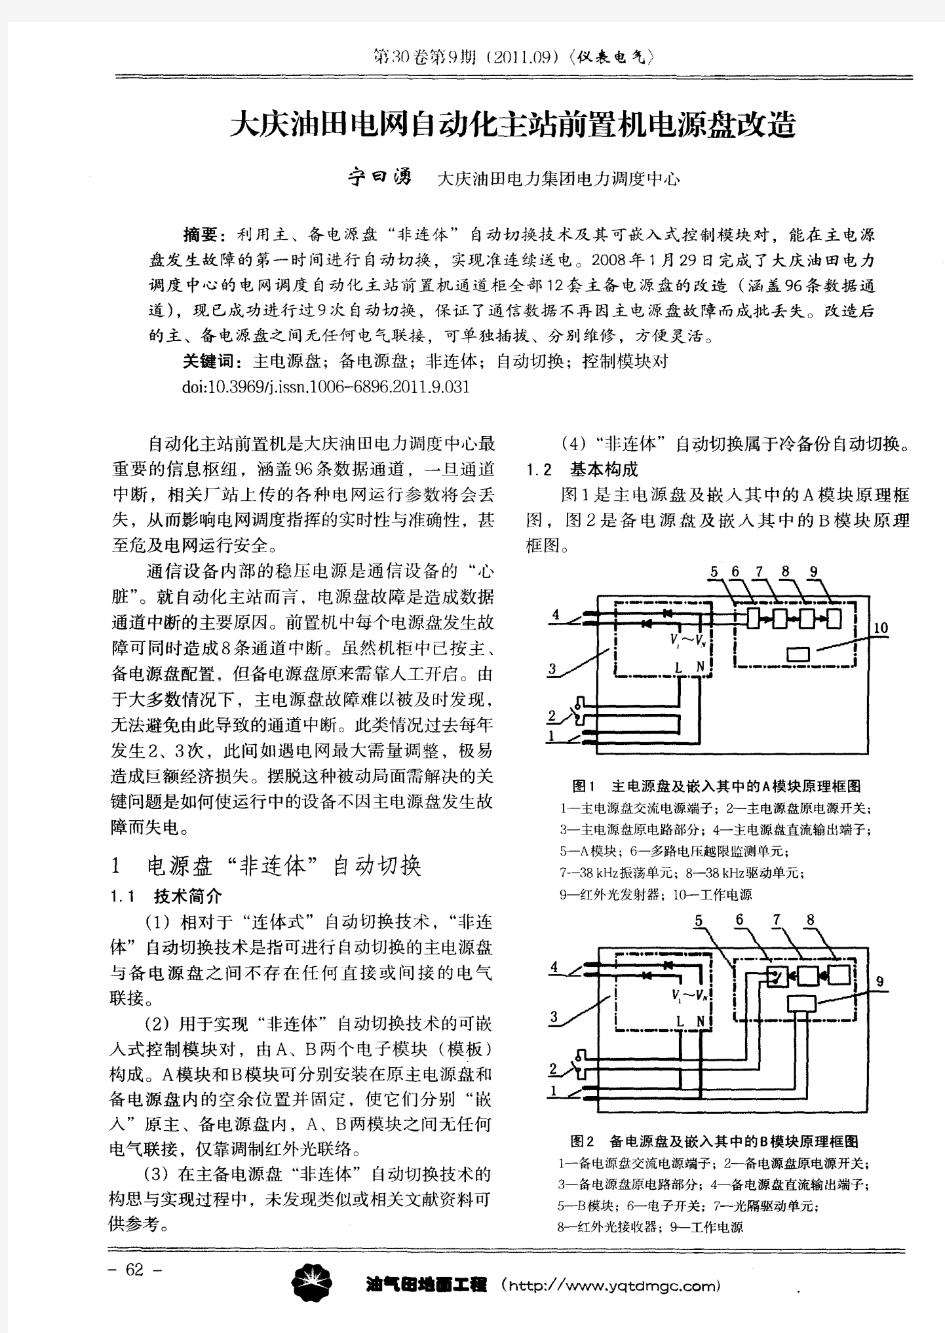 大庆油田电网自动化主站前置机电源盘改造